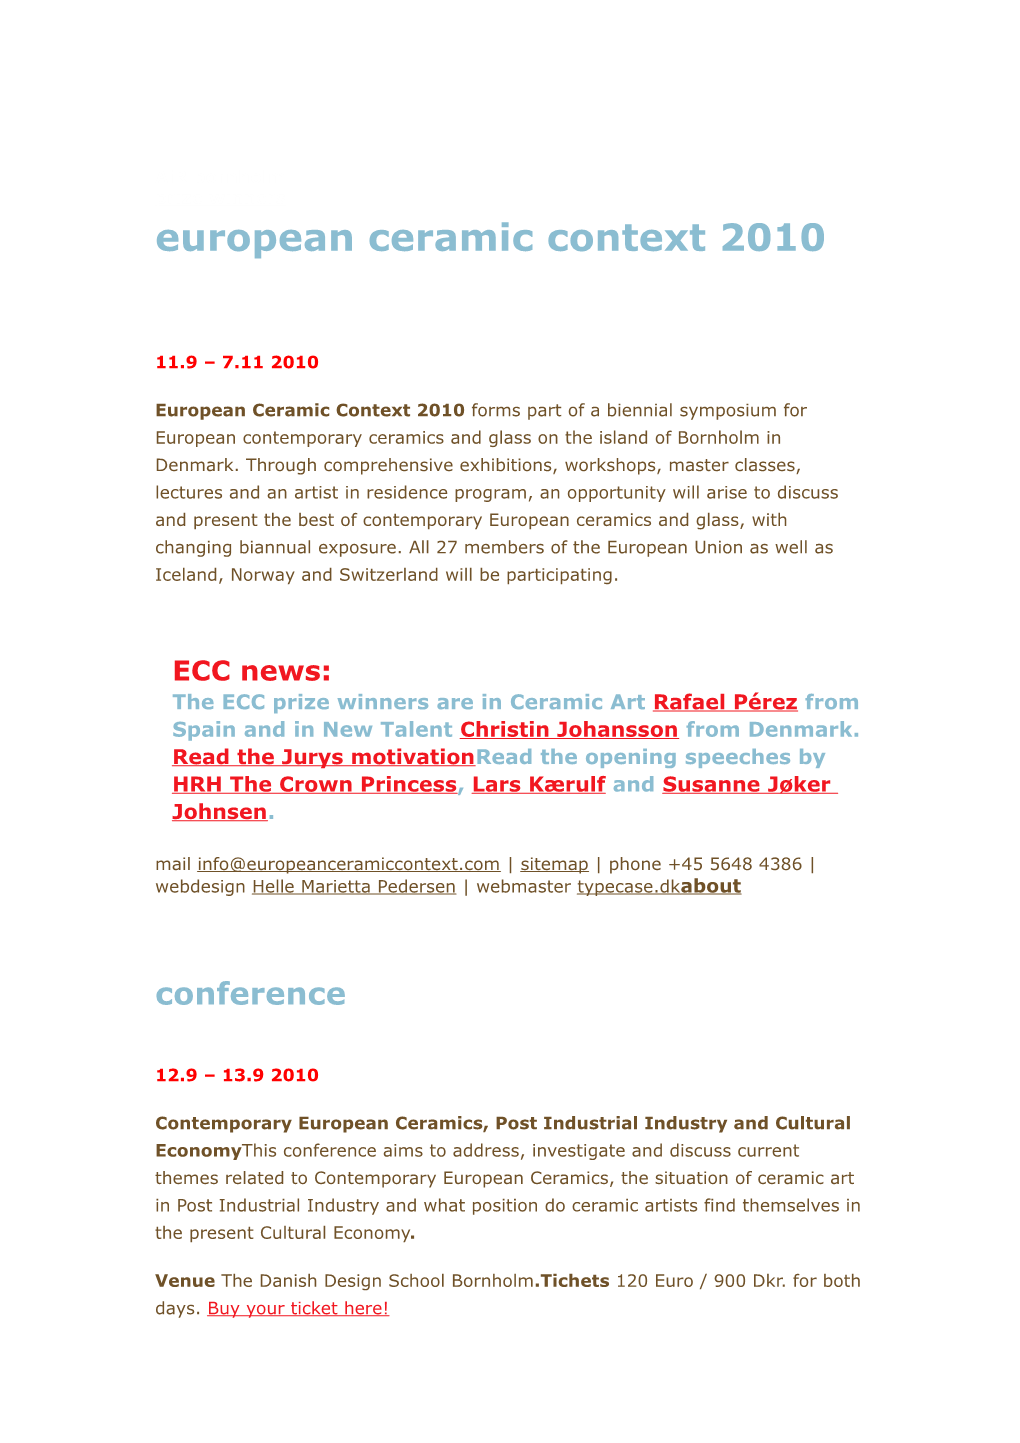 European Ceramic Context 2010